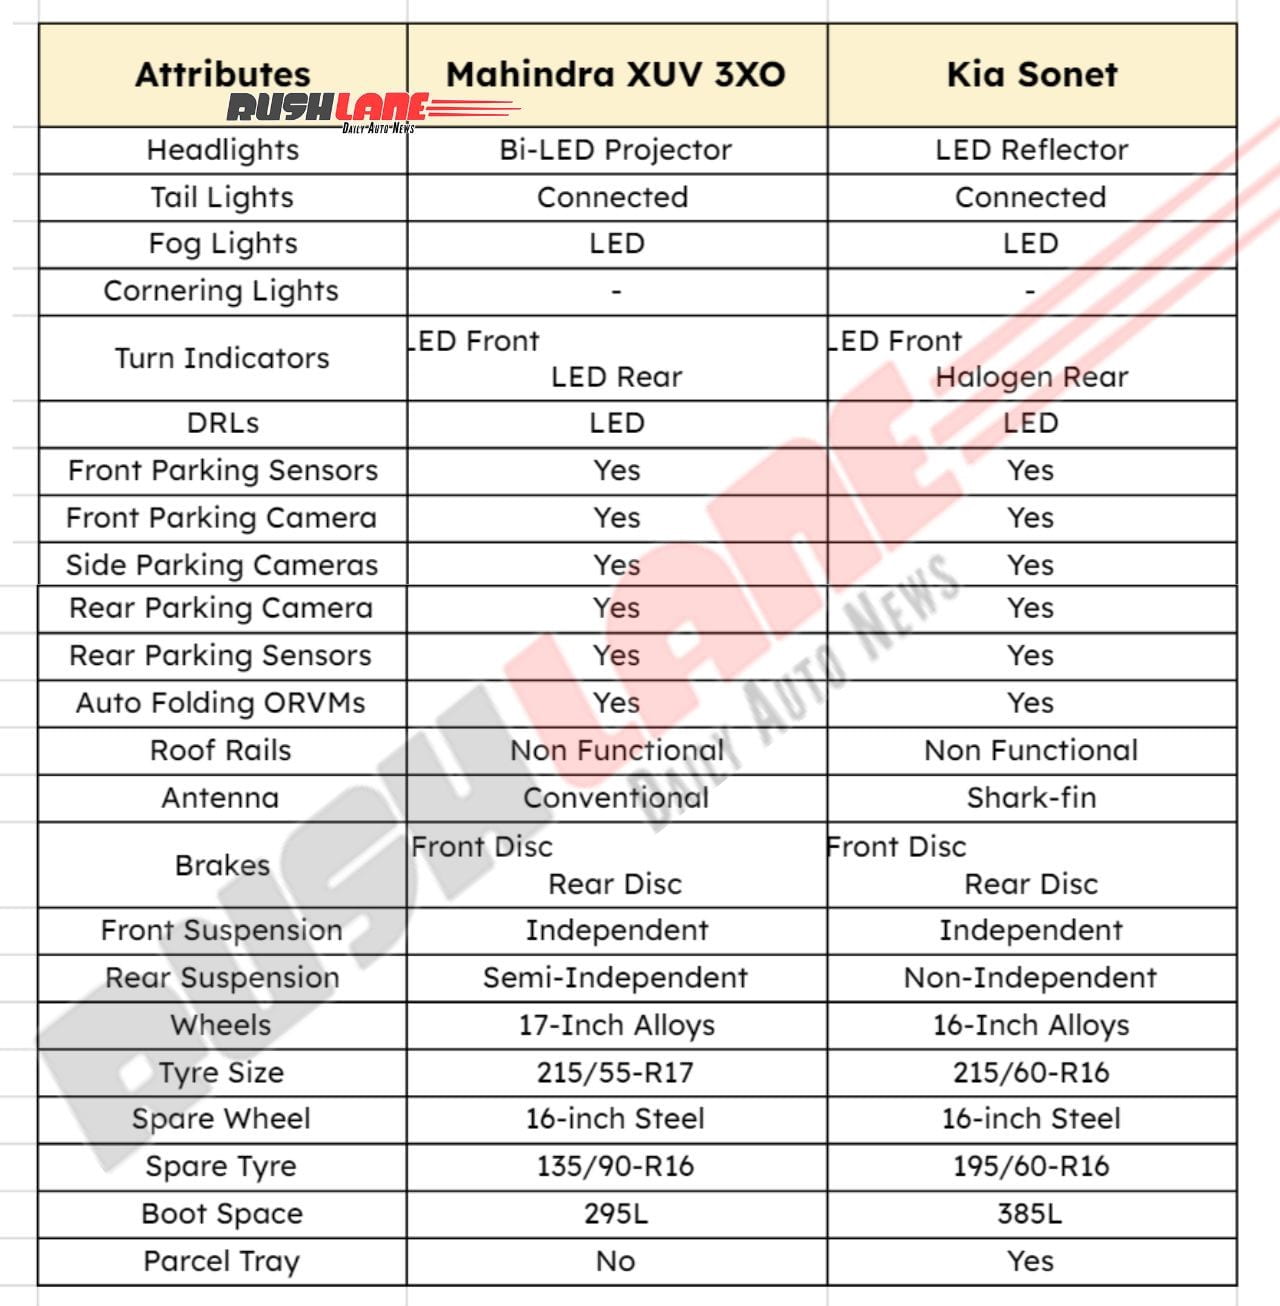 Mahindra XUV 3XO vs Kia Sonet - Attributes